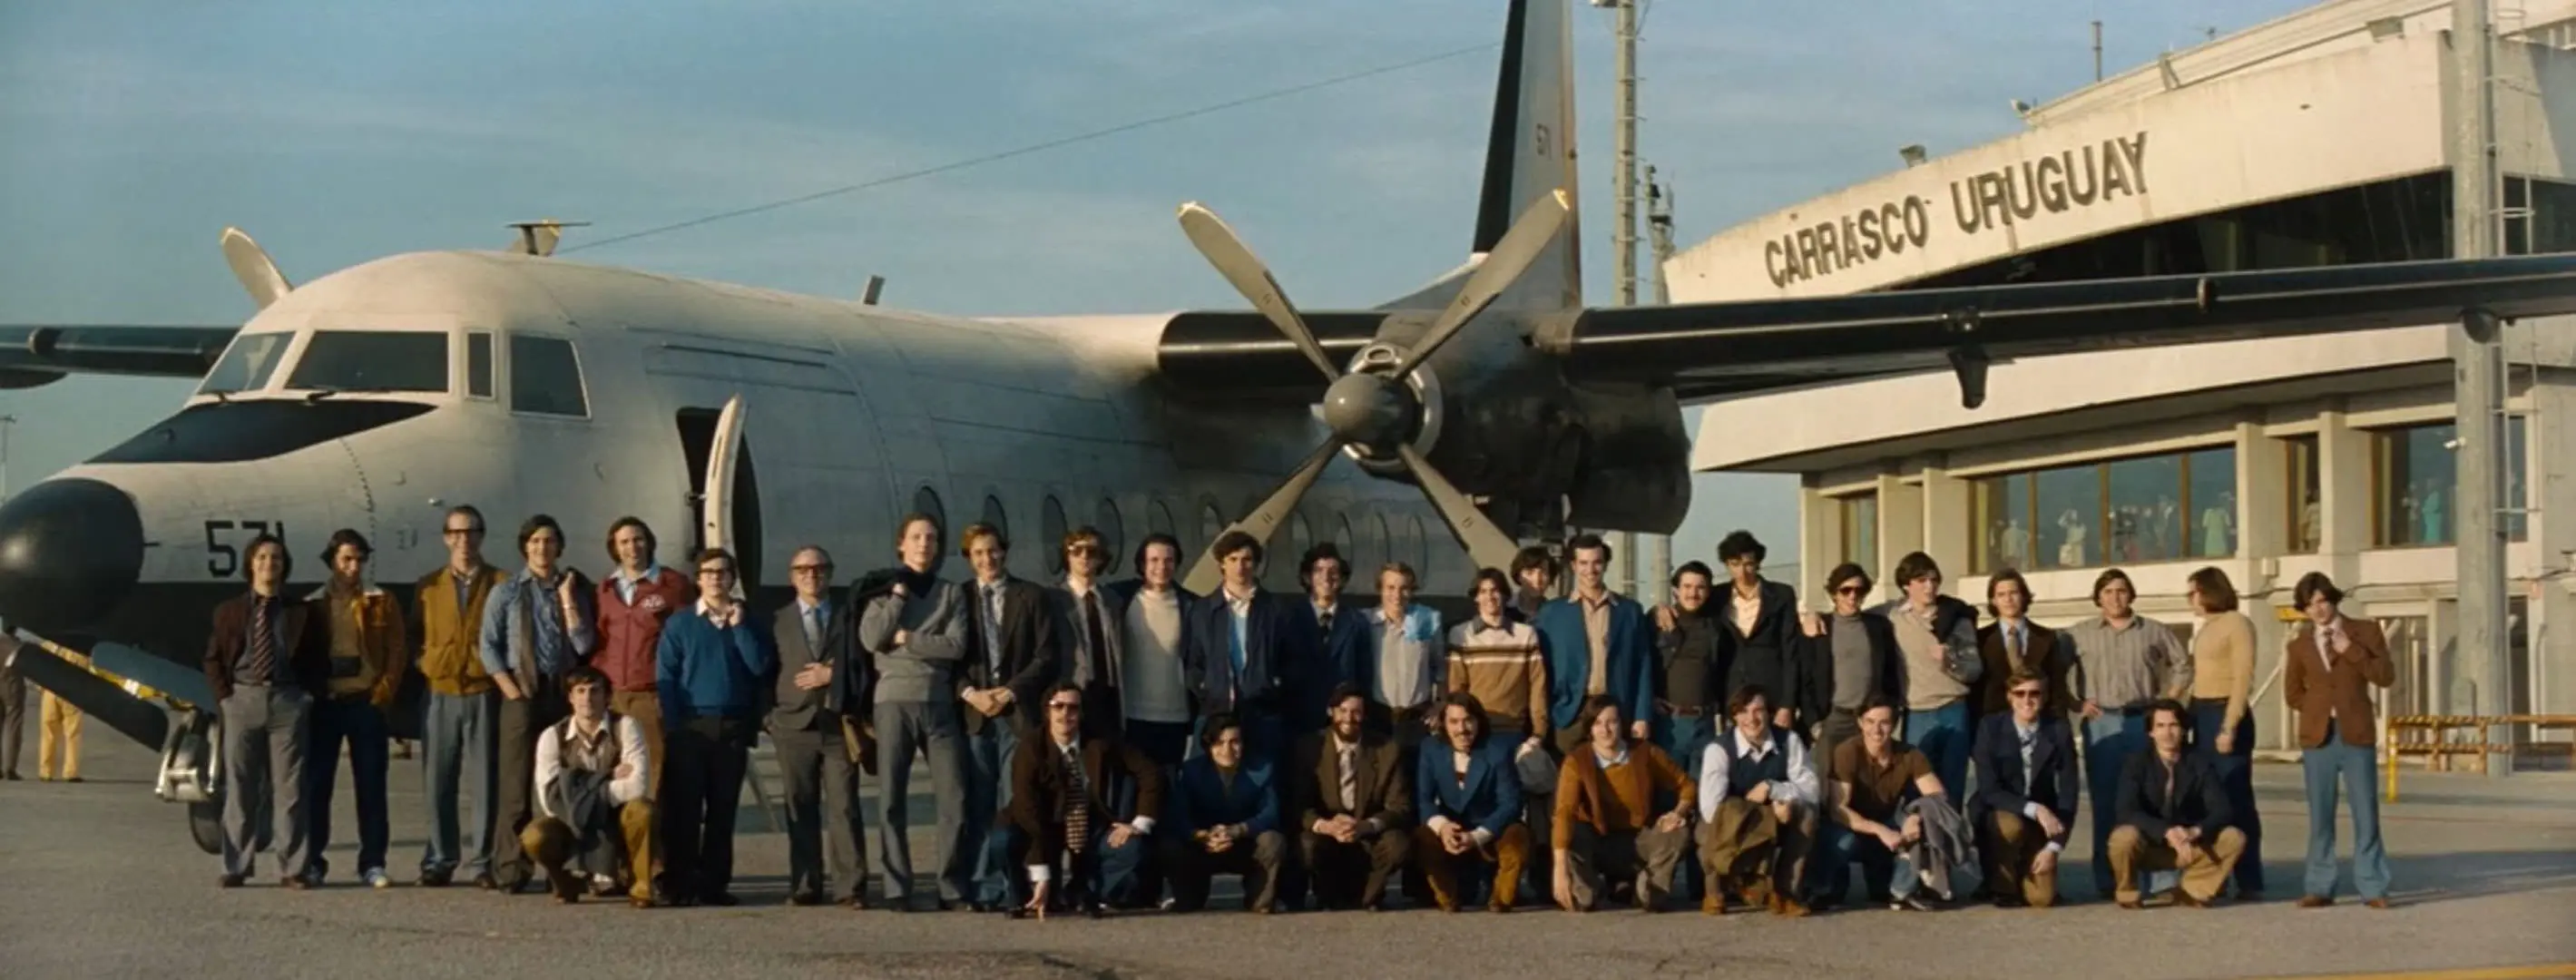 پرواز ۵۷۱ نیروی هوایی اروگوئه با مسافرانی که در فرودگاه مقابل هواپیما ایستاده‌اند و عکسی دسته‌جمعی را به یادگاری می‌گیرند در نمایی از فیلم انجمن برف به کارگردانی جی ای بایونا